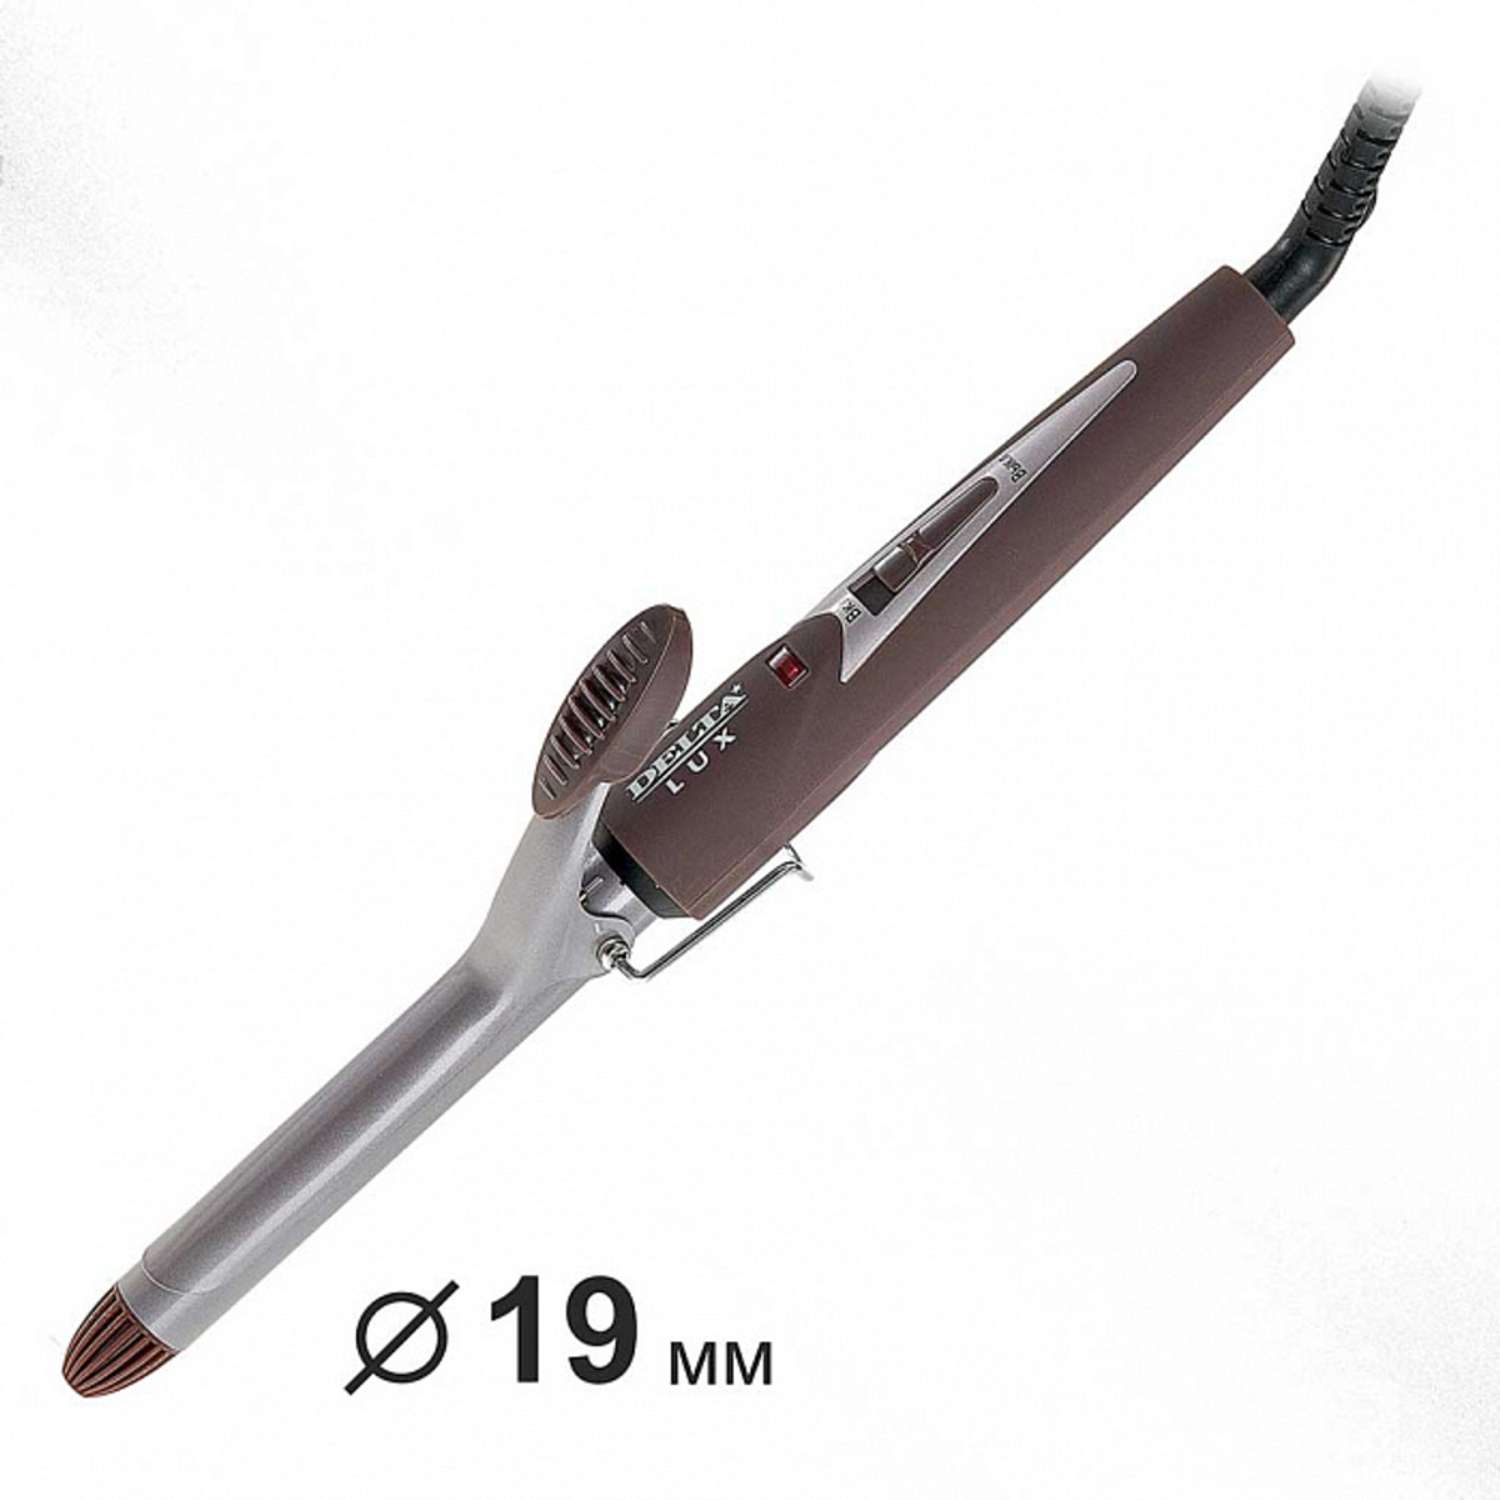 Стайлер для завивки волос Delta Lux DL-0630 коричневый керамическое покрытие d 19 мм 25 Вт - фото 2